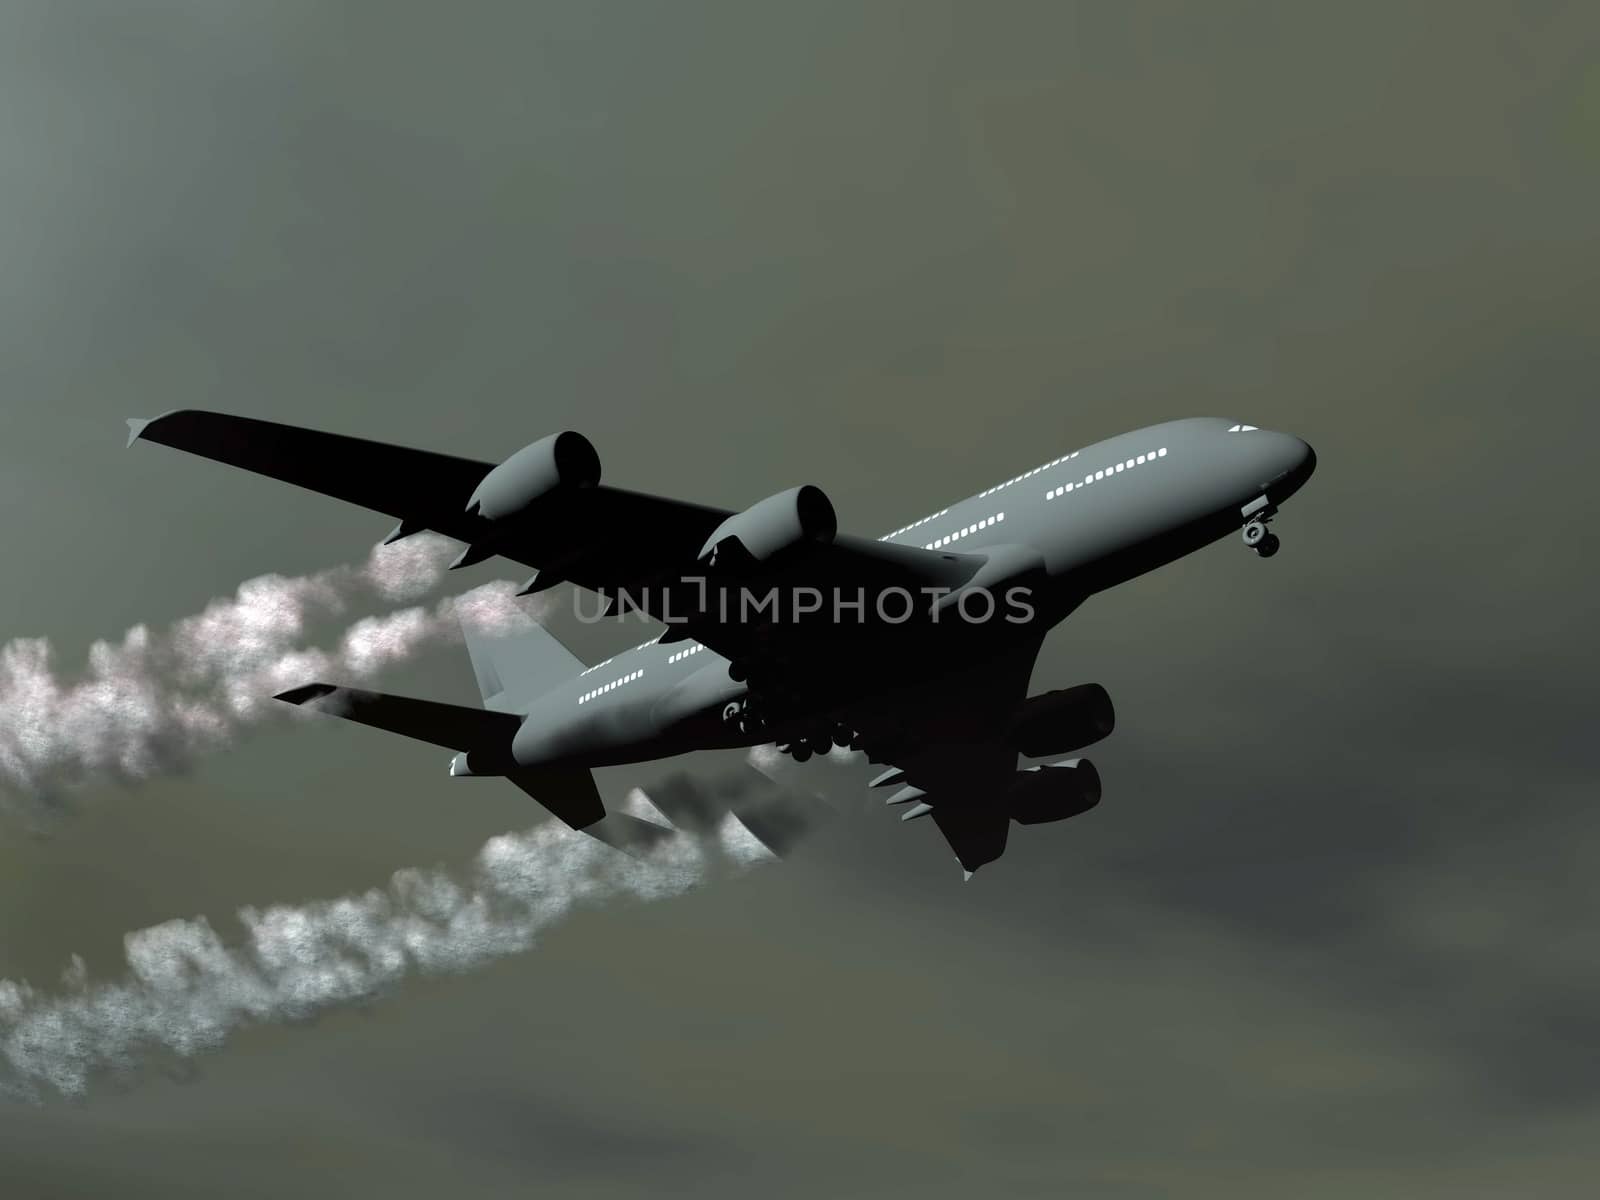 Aircraft - 3D render by Elenaphotos21